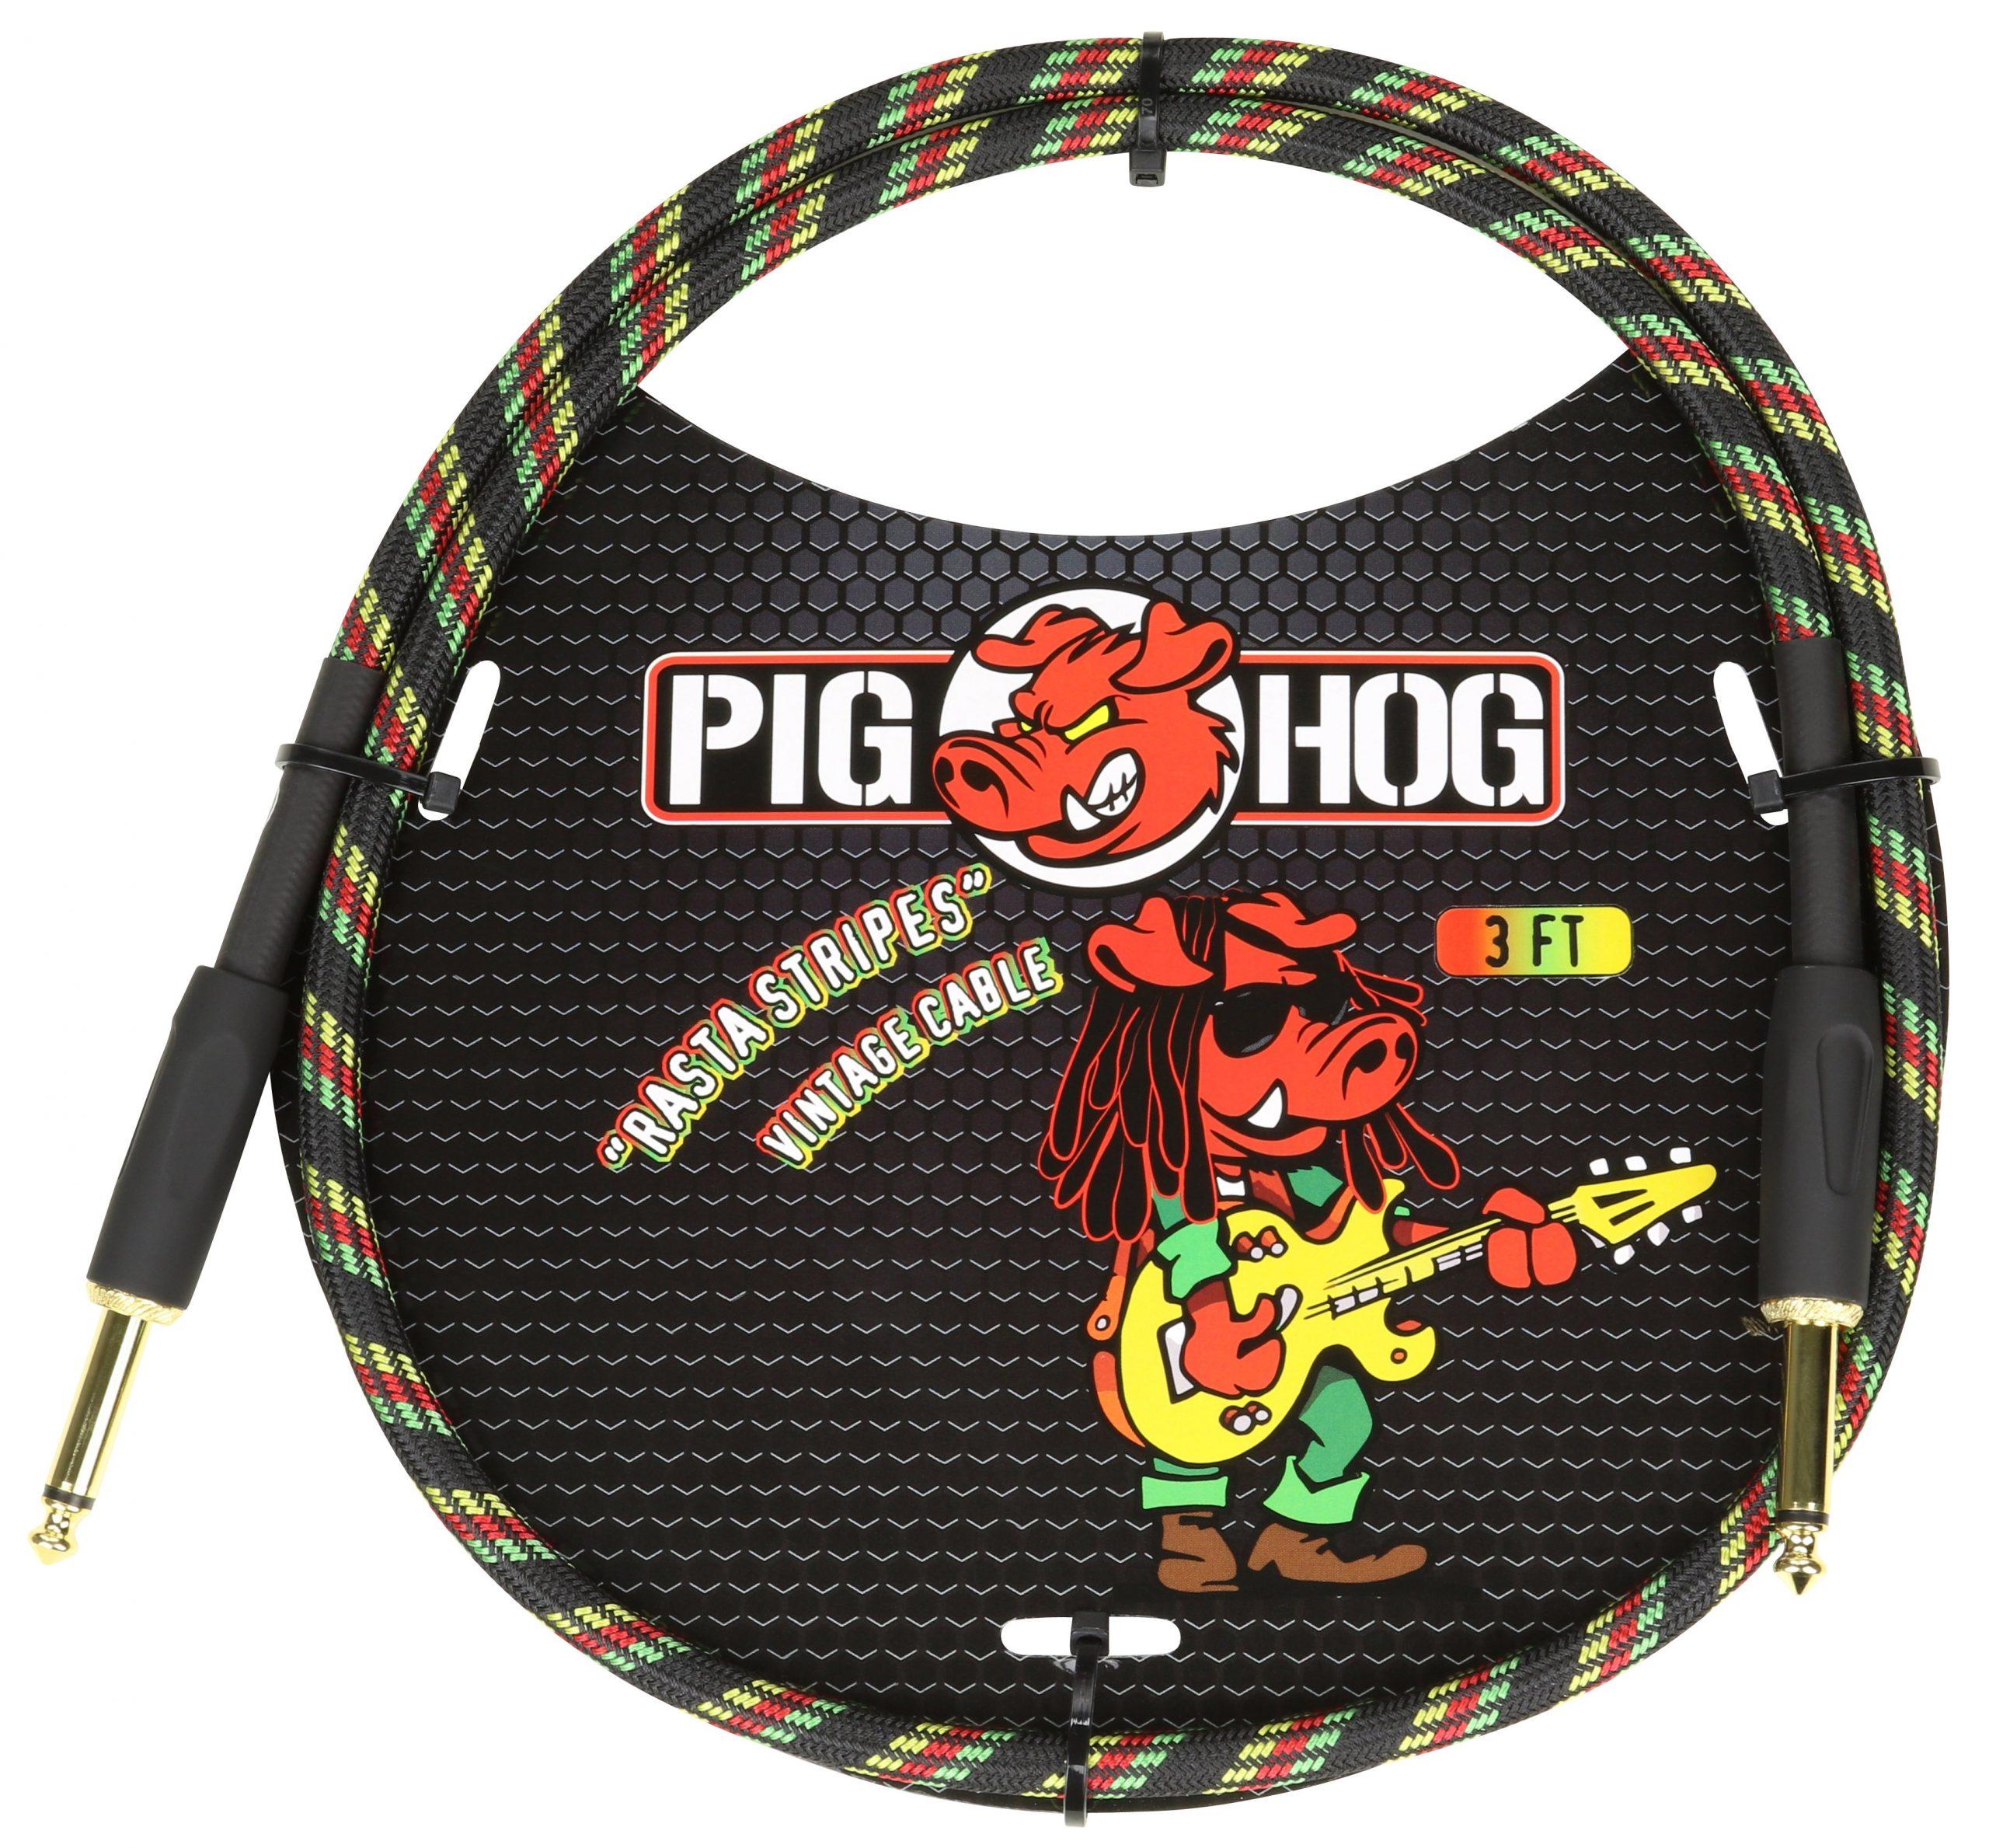 Pig Hog "Rasta Stripe" 3ft Patch Cables